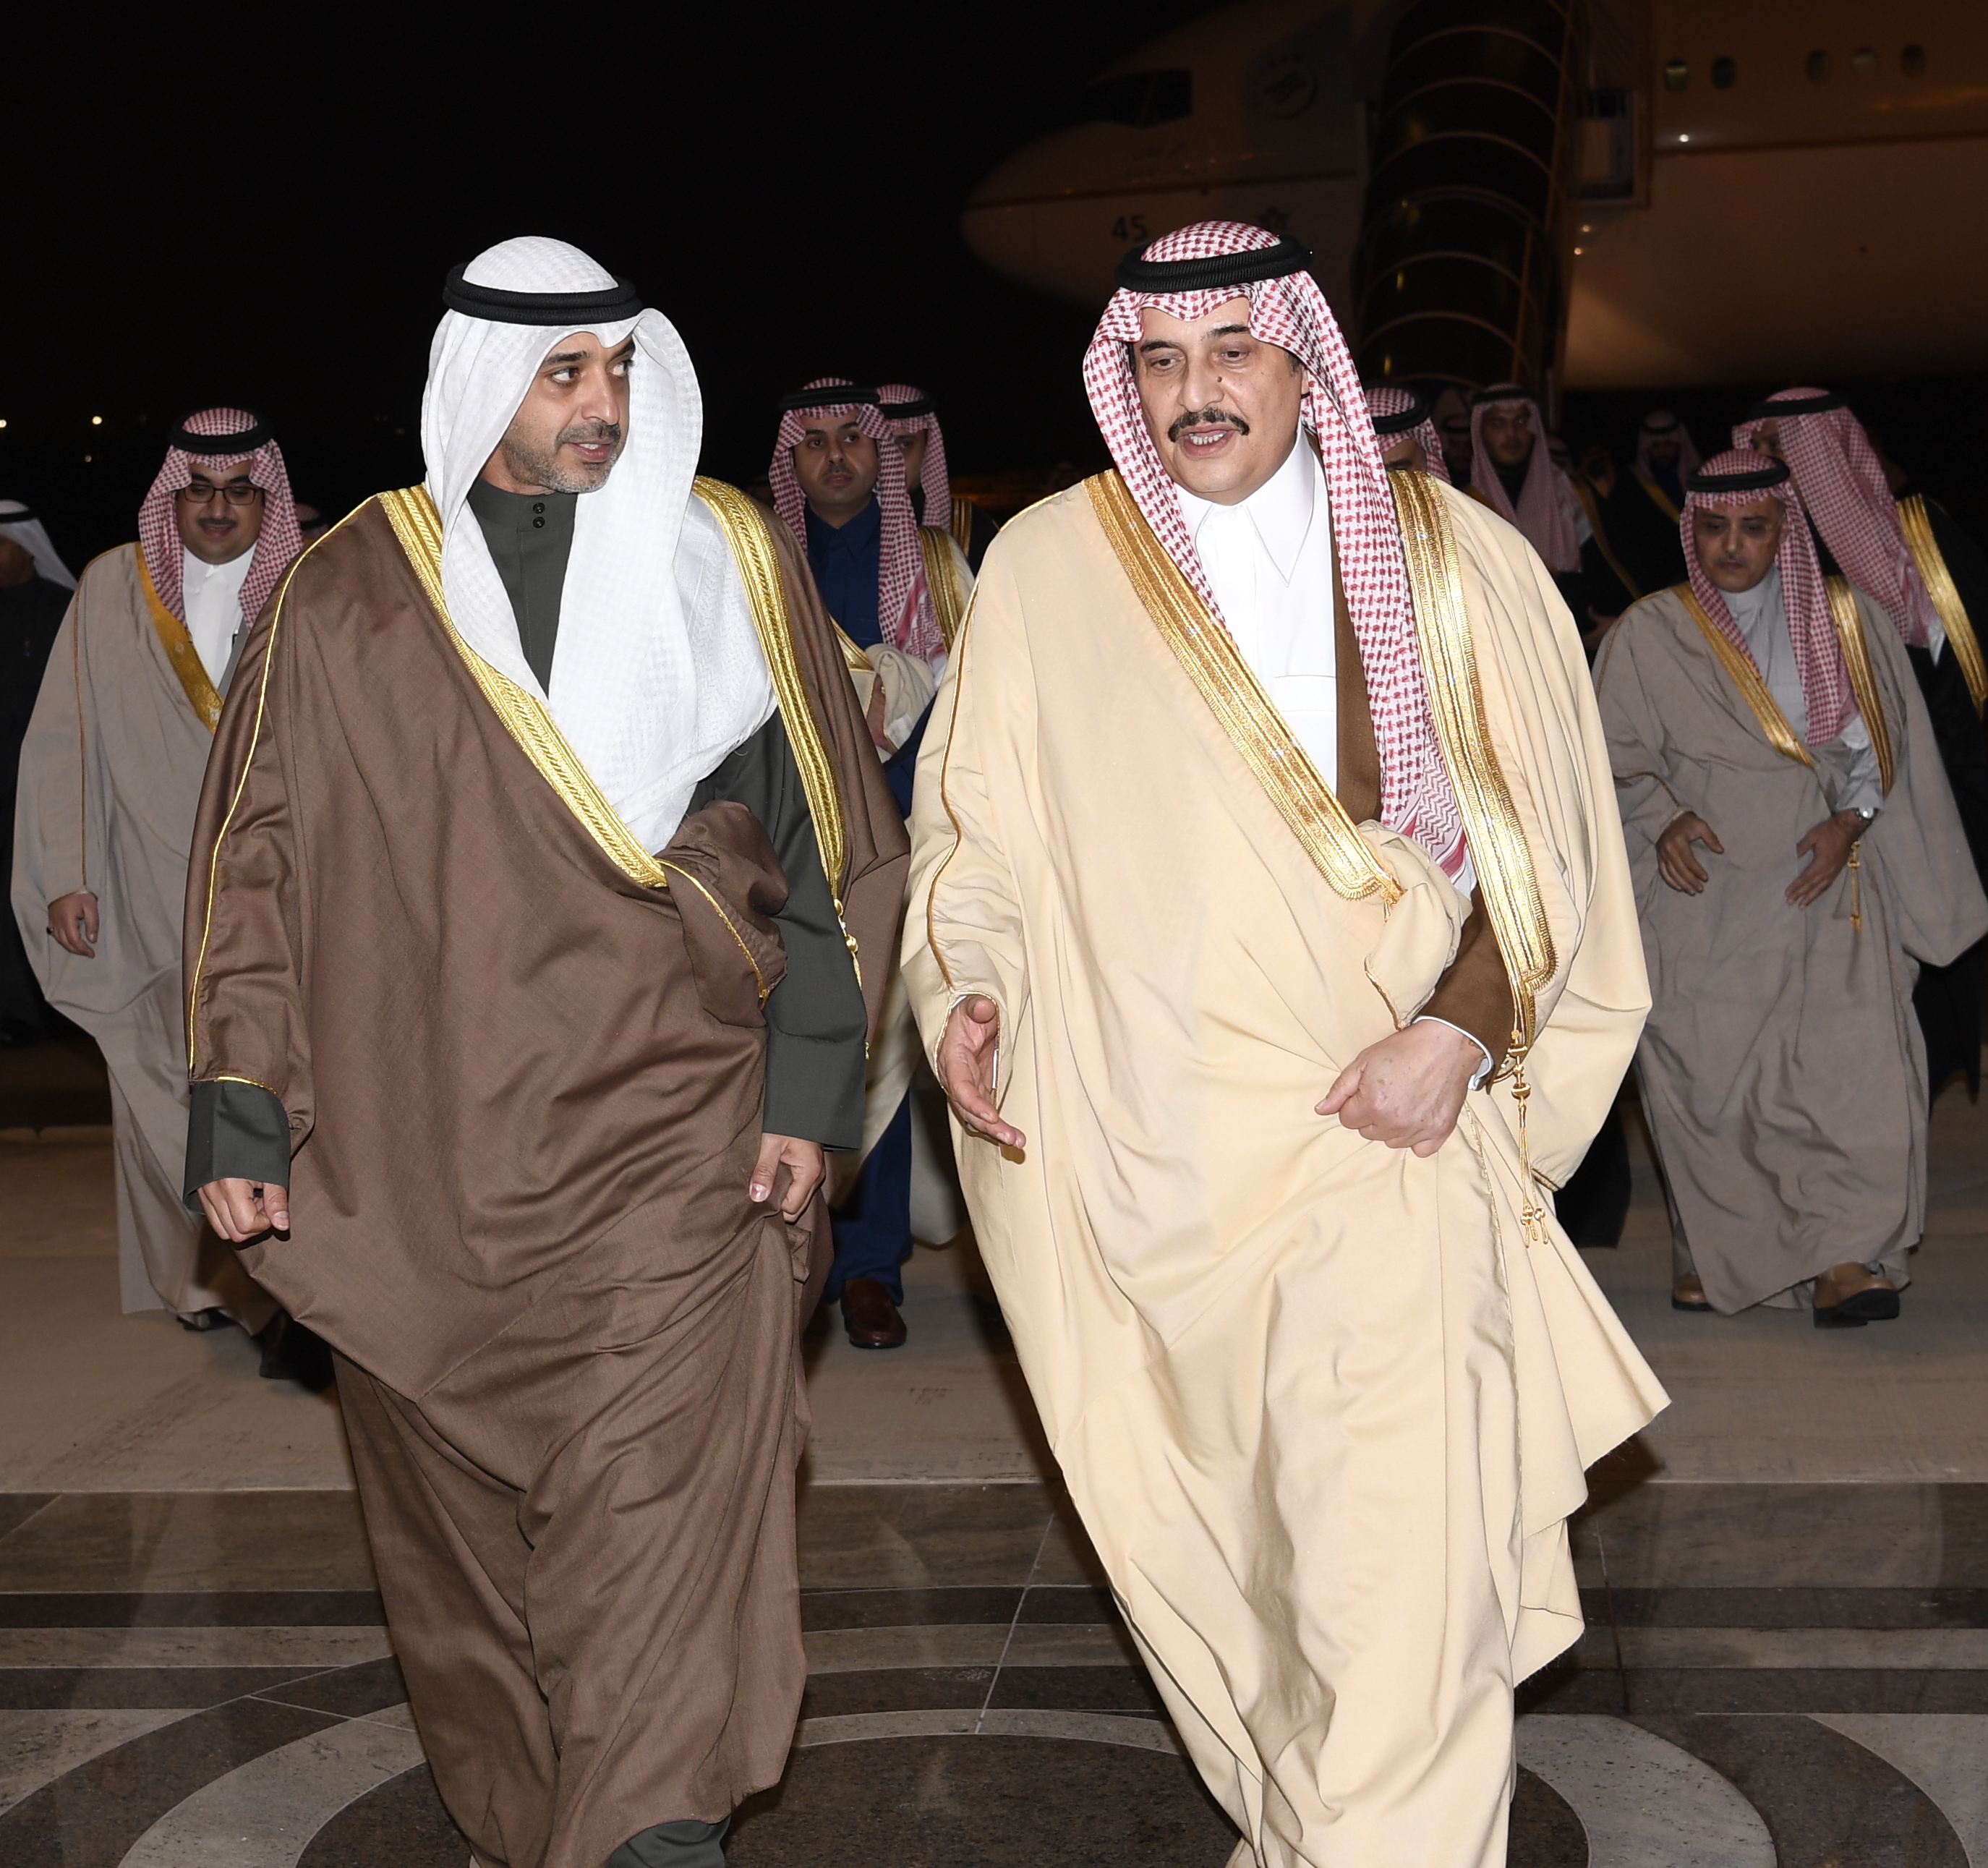 وصول عدد من أصحاب السمو الملكي والأمراء السعوديين لحضور معرض (تاريخ الملك فهد) بالكويت